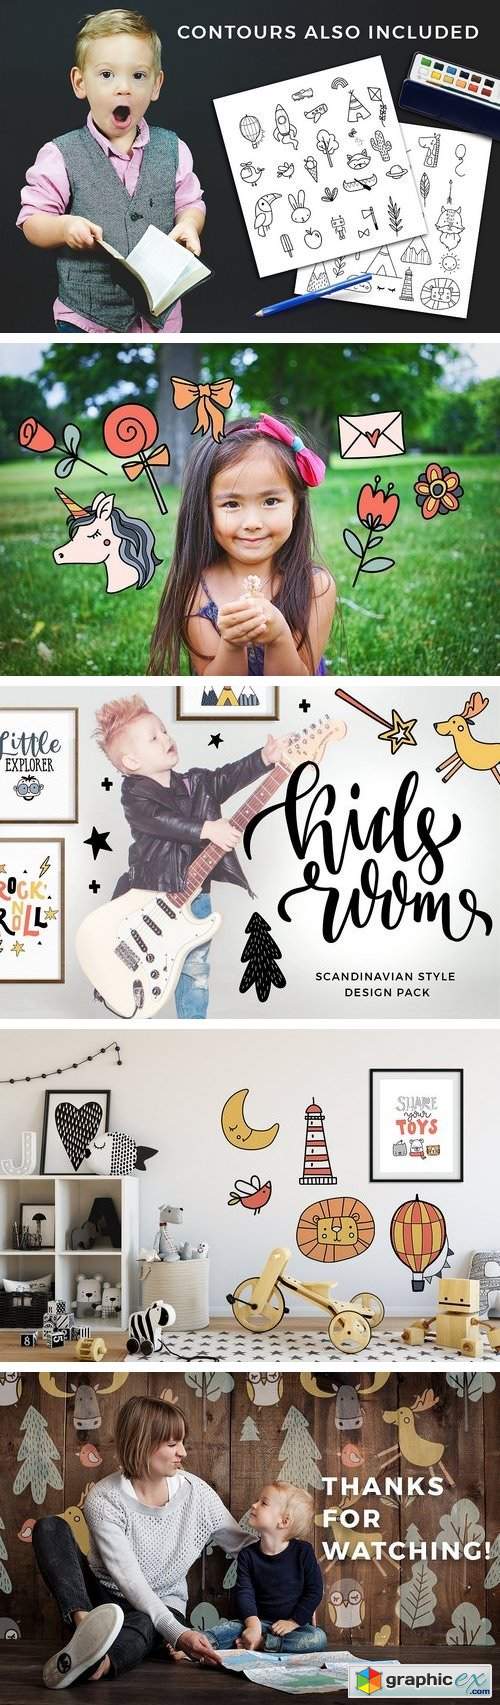 Kids room - scandinavian design pack